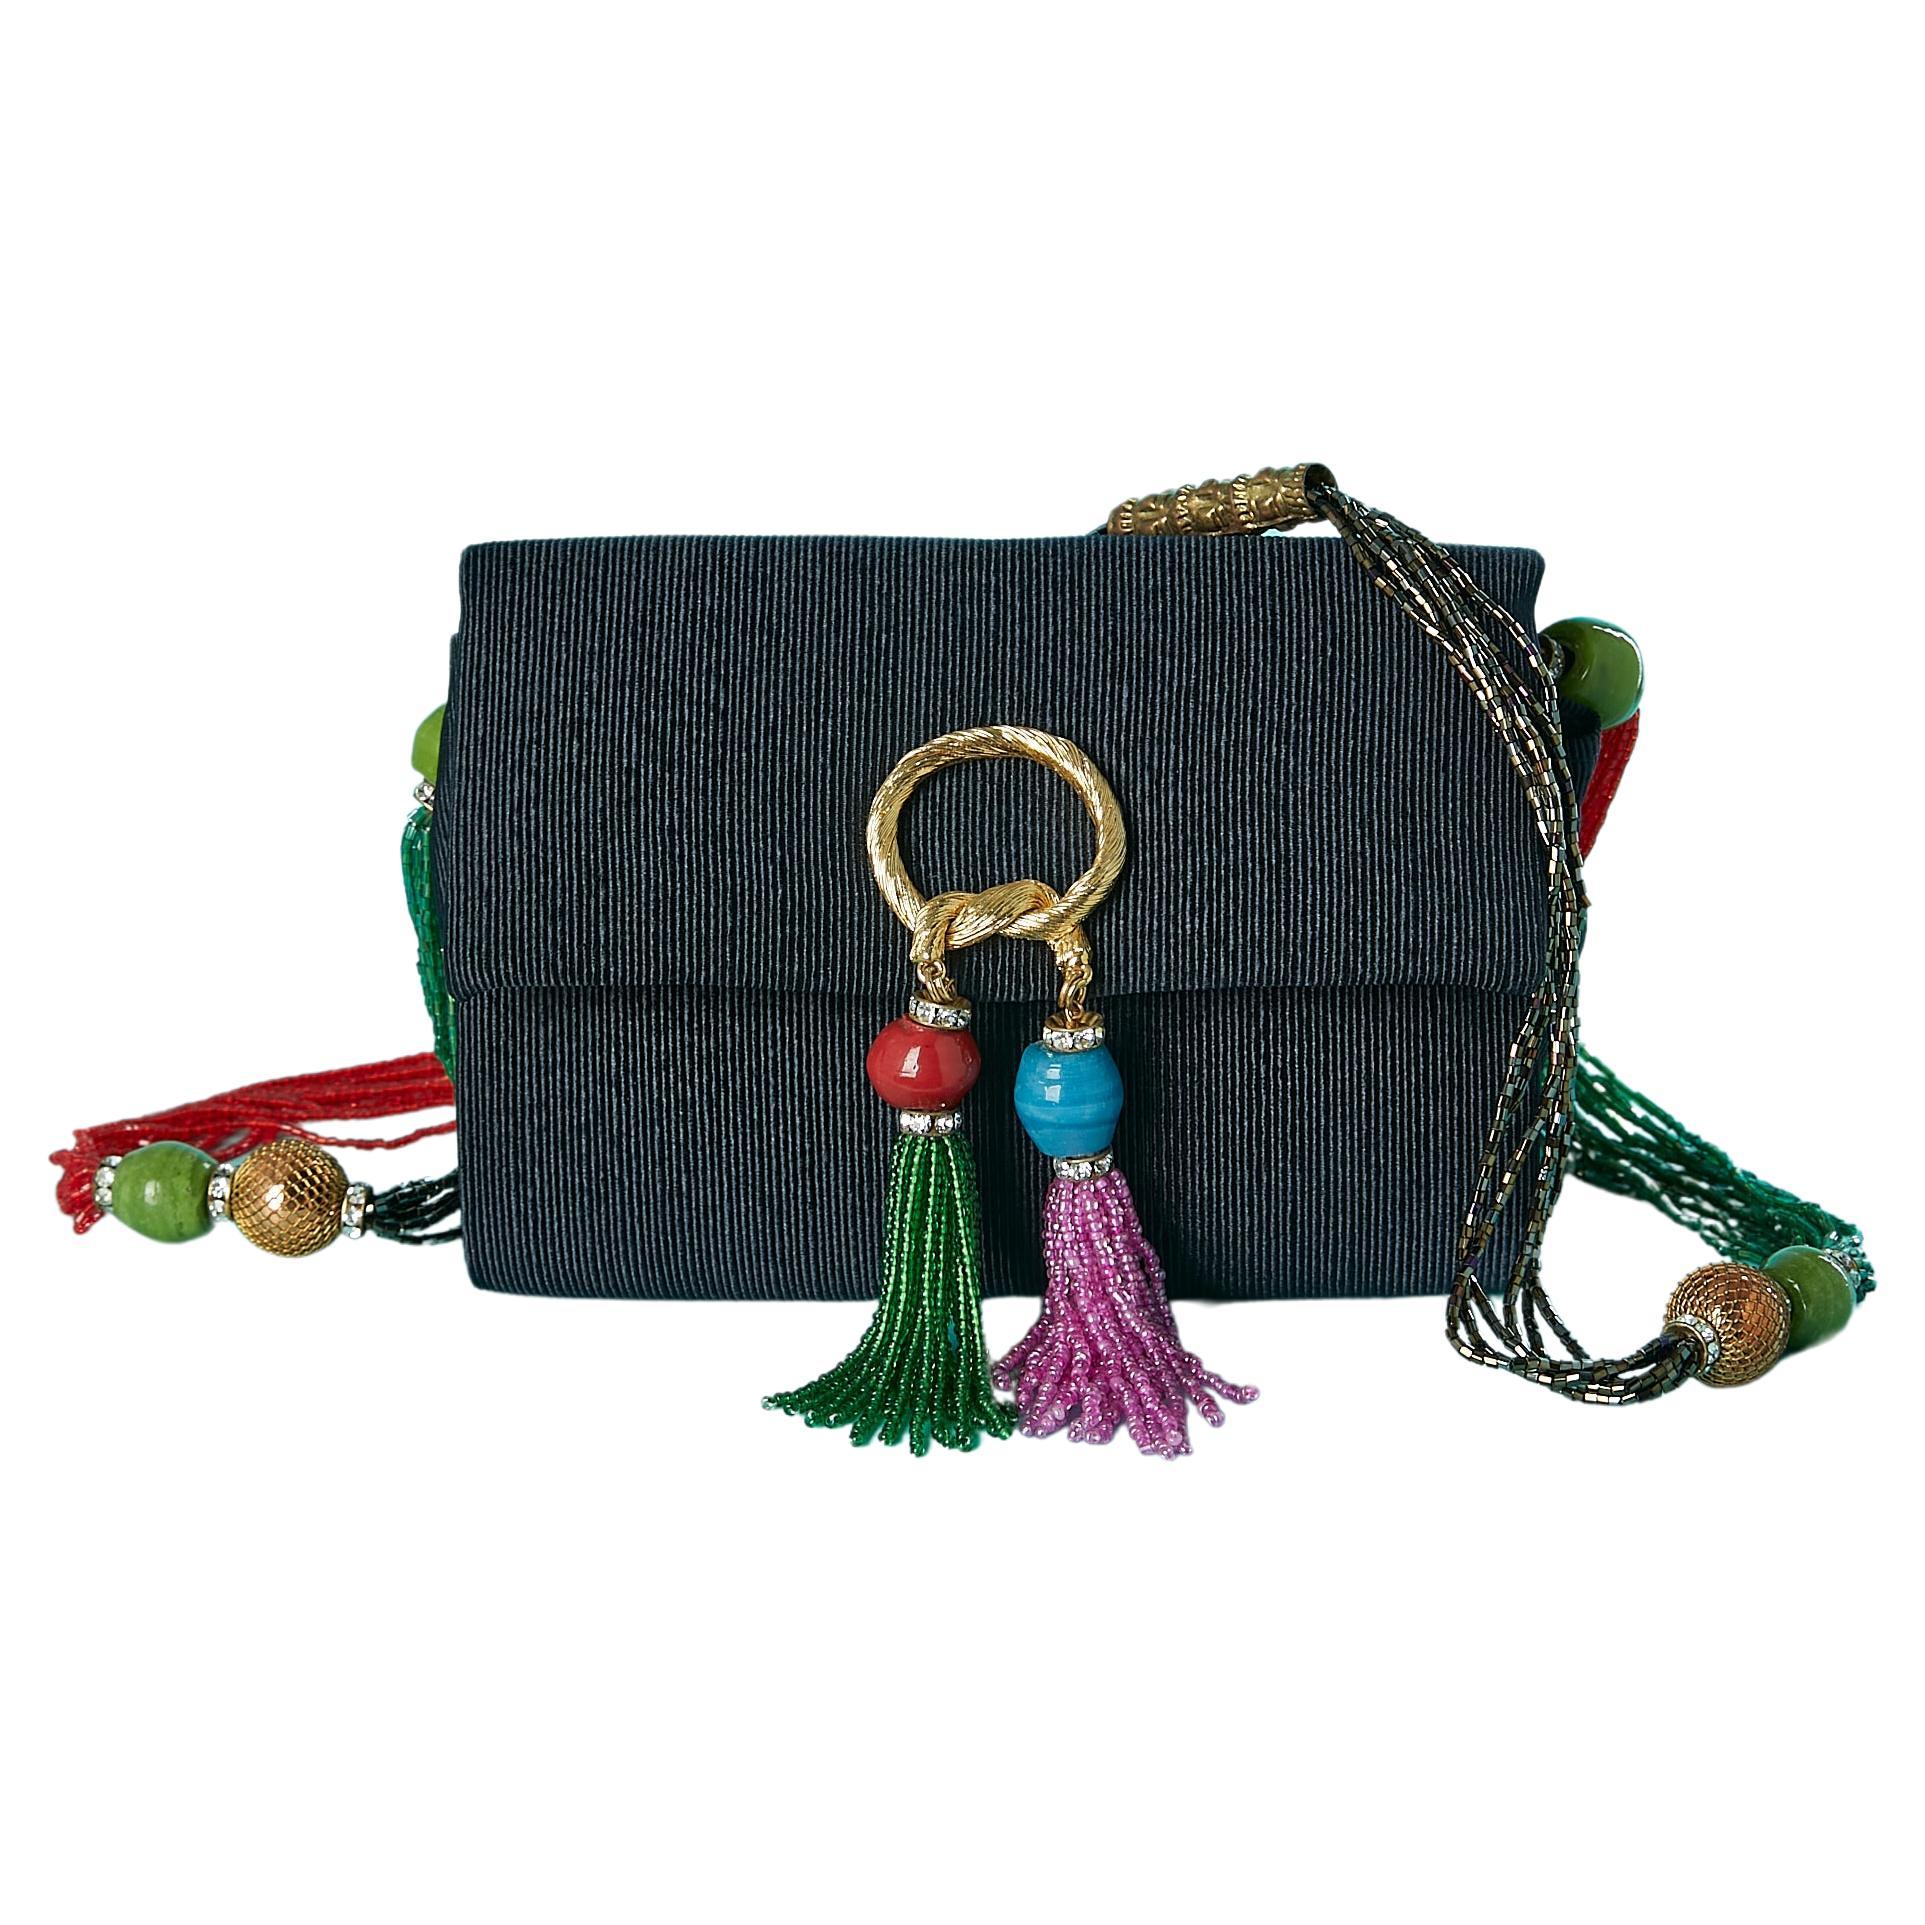 Fendi Beaded Bag - 26 For Sale on 1stDibs  fendi beaded purse, fendi  beads, fendi beaded baguette handbag